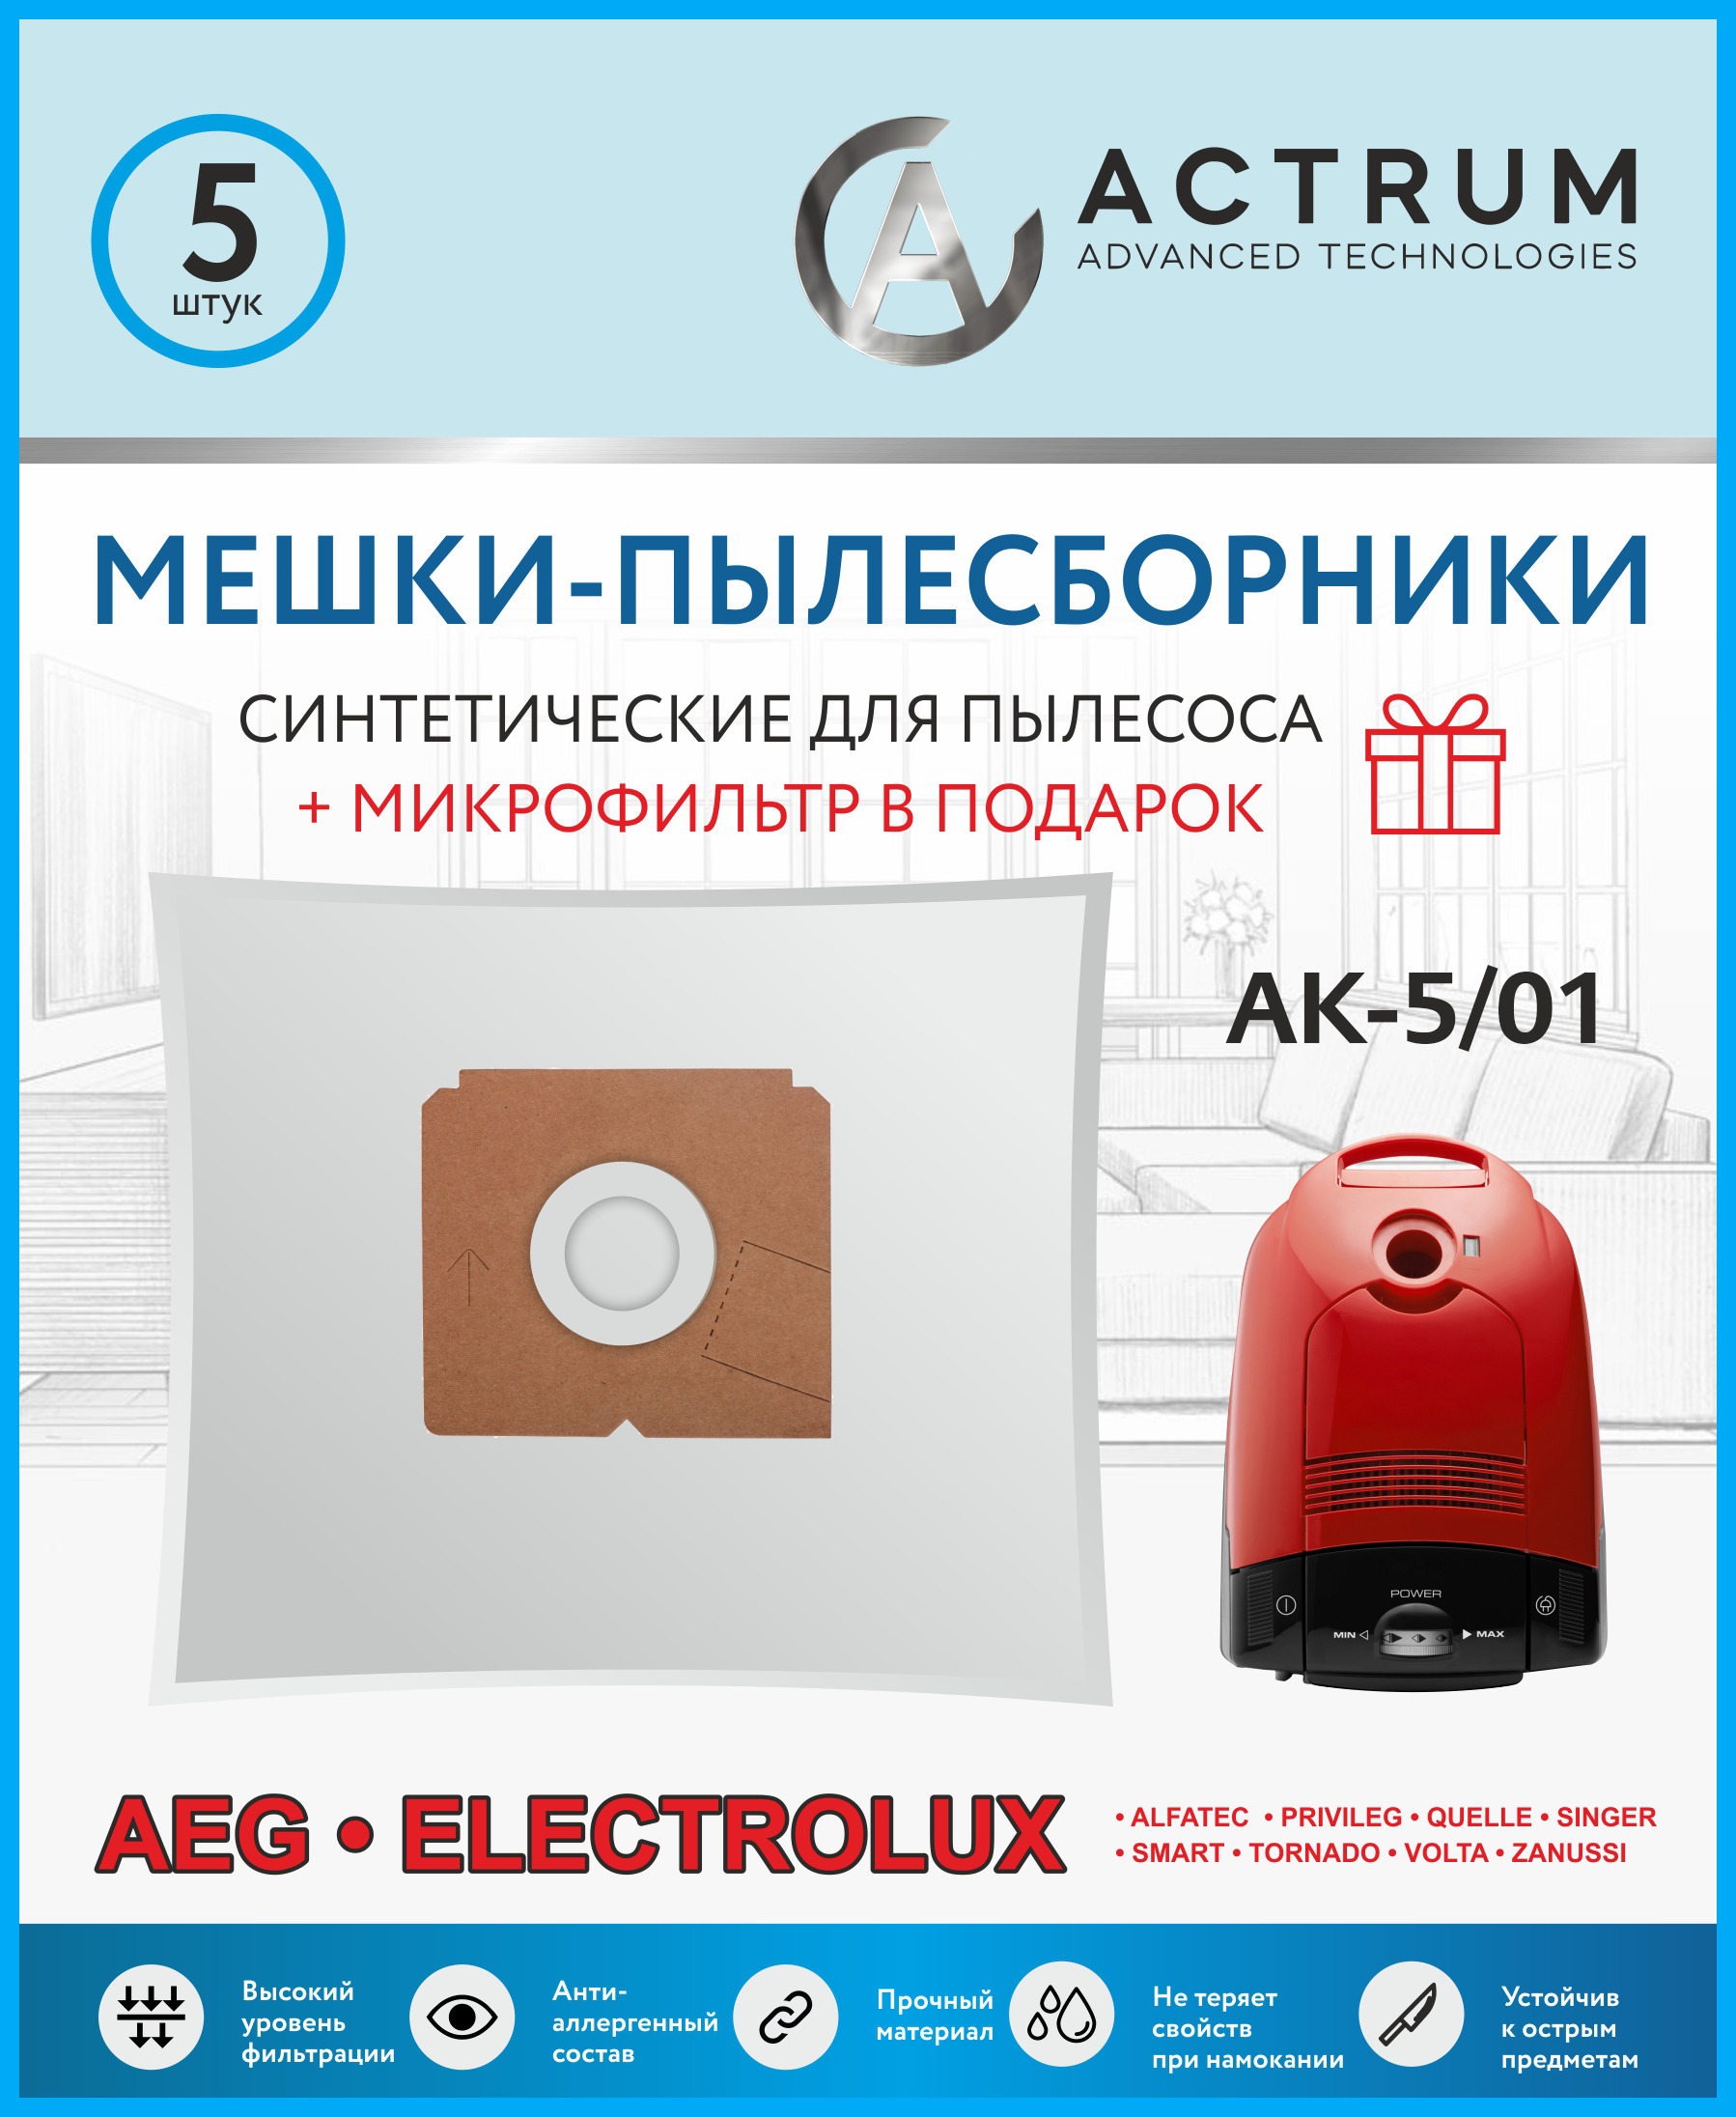 Пылесборник ACTRUM AK-5/01 + микрофильтр two point campus enrolment edition xbox one series x